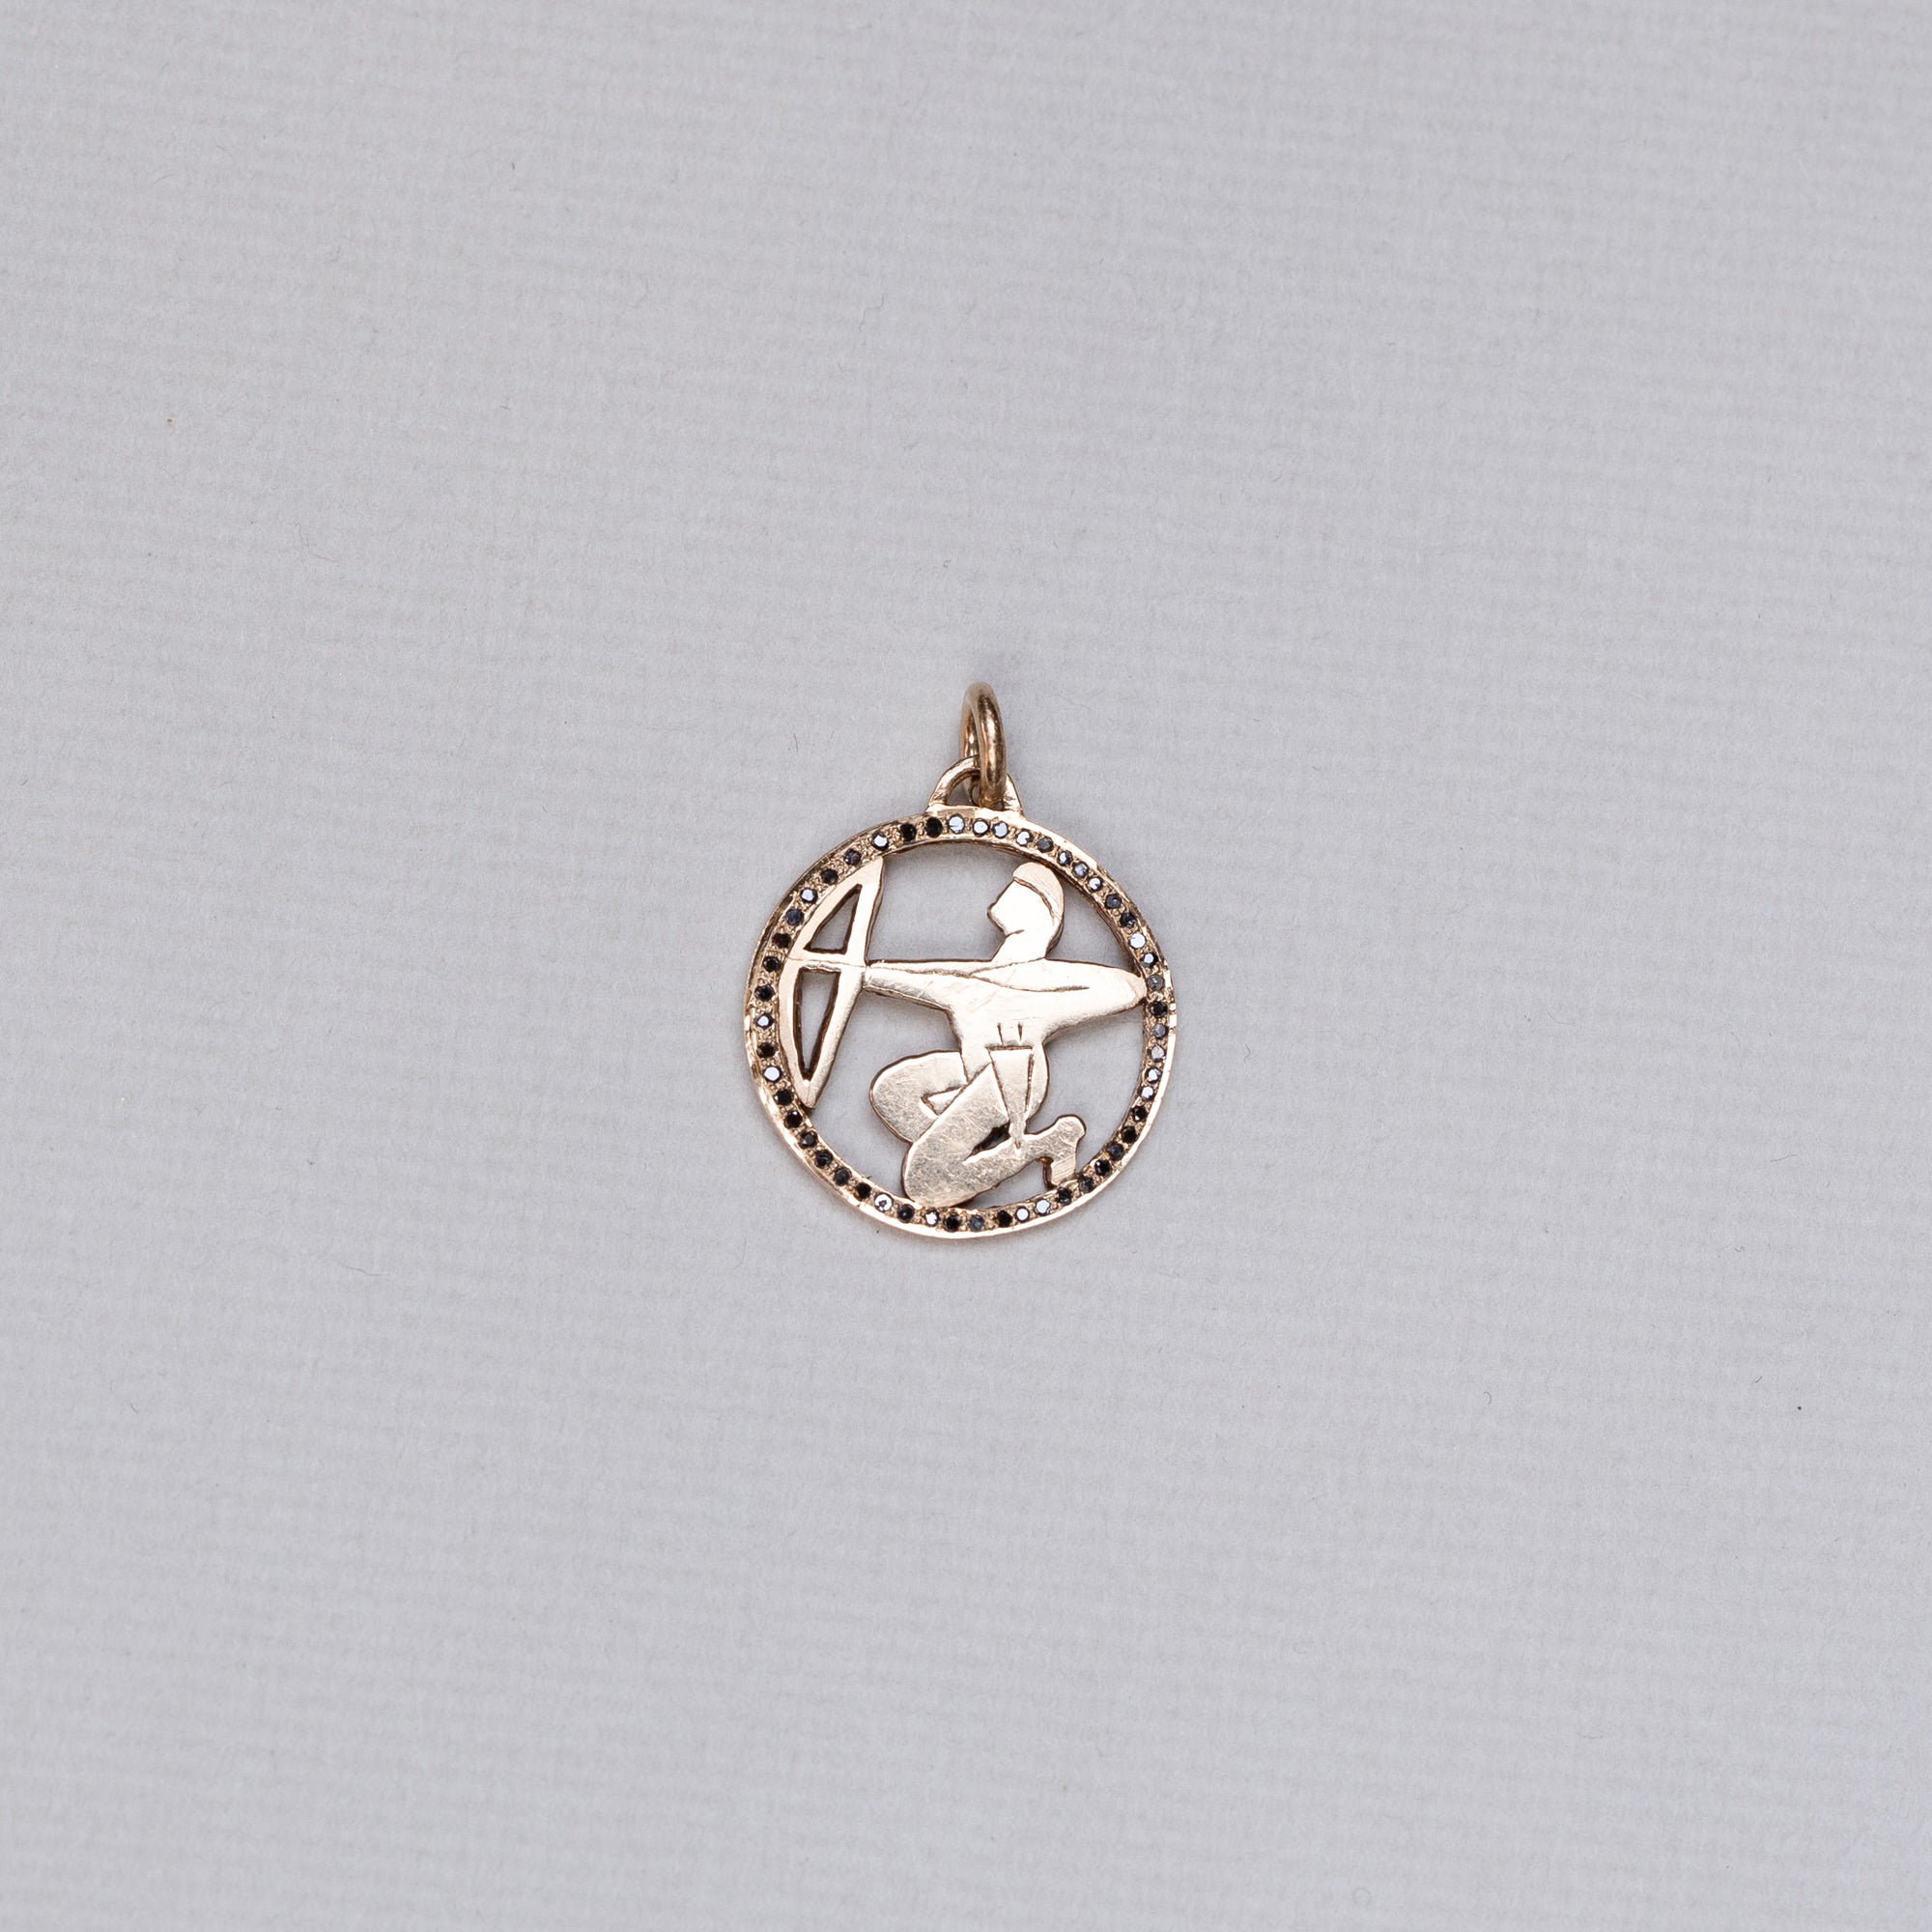 Vintage Sagittarius Charm Pendant with Black Diamonds